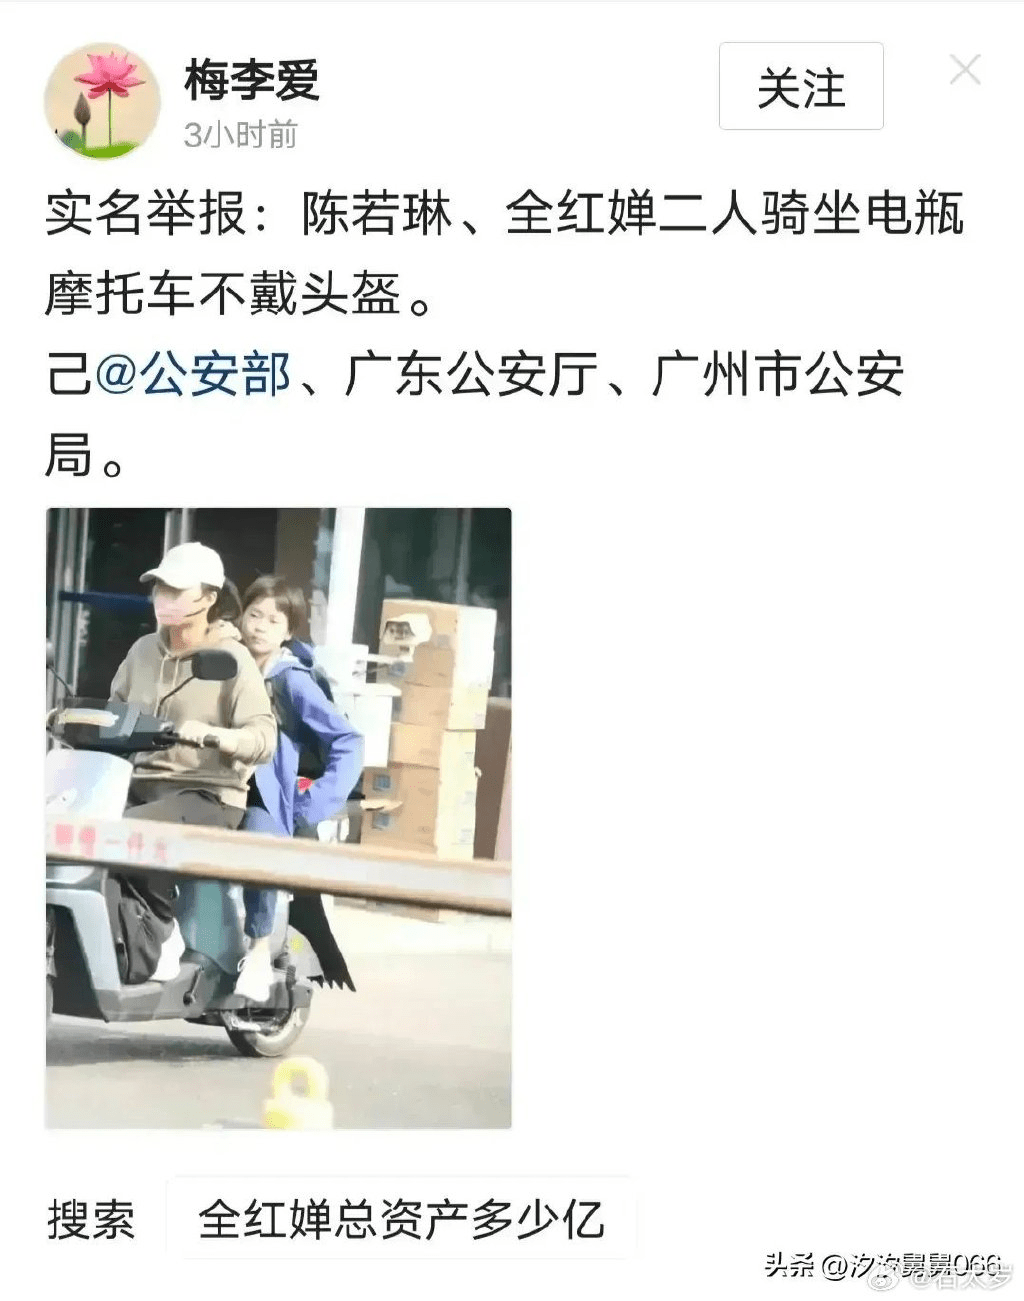 陈若琳全红婵师徒俩骑车没戴头盔 被网民实名举报惹议